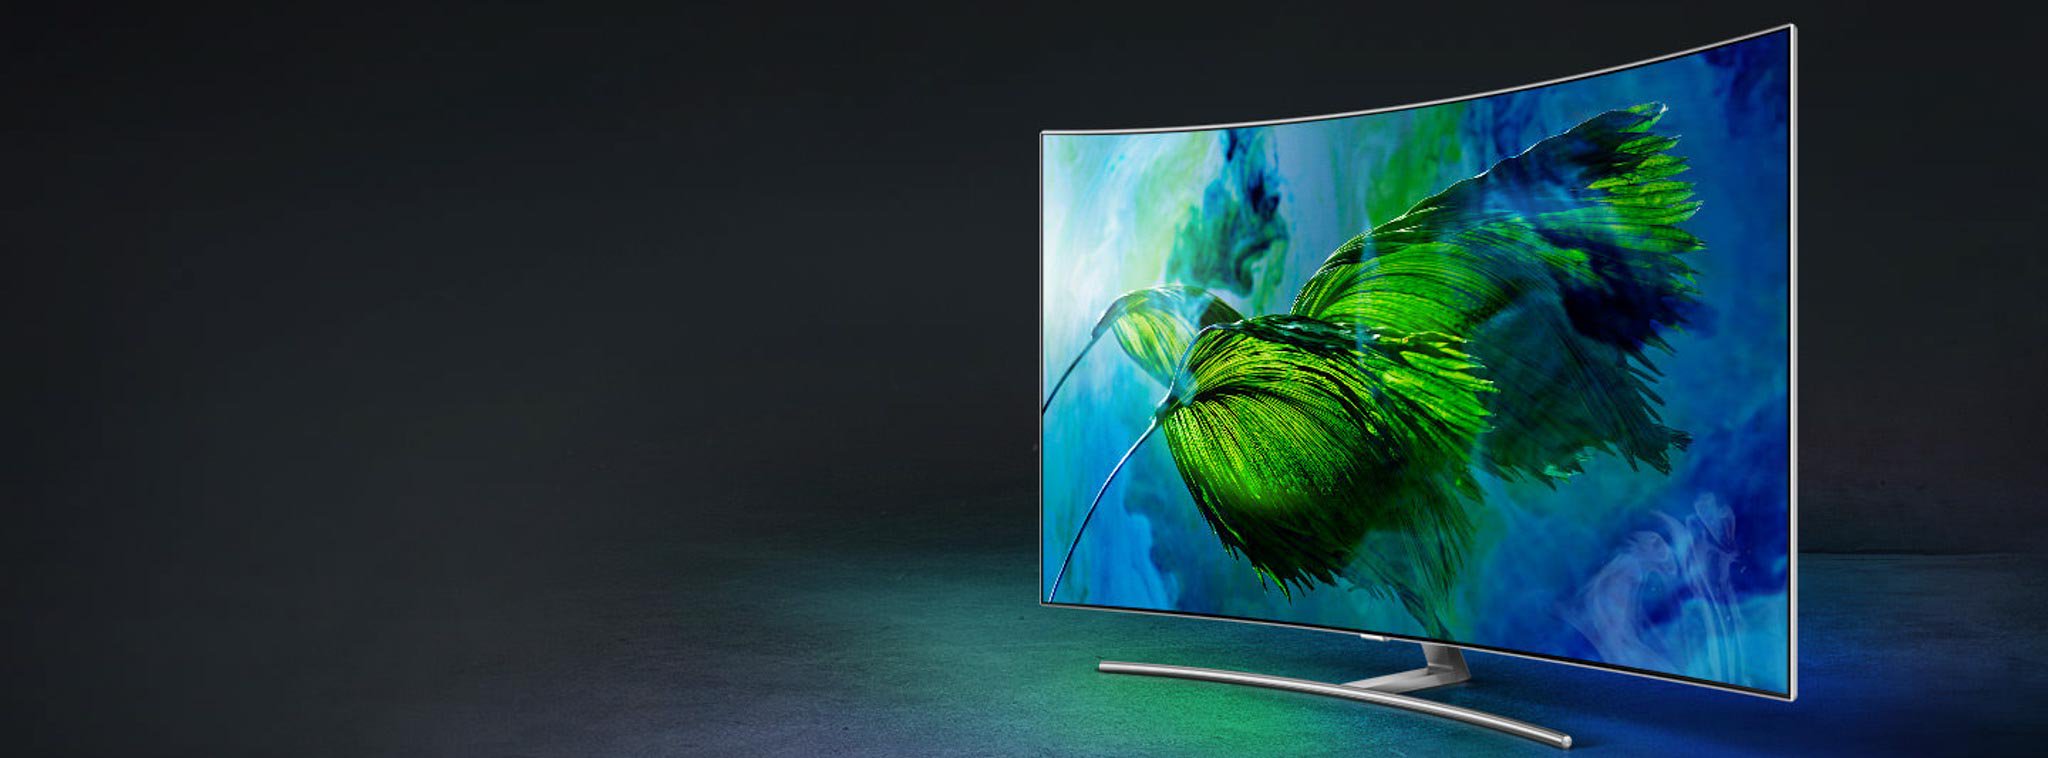 Samsung có thể sẽ giới thiệu TV Micro LED 150 inch tại CES 2018